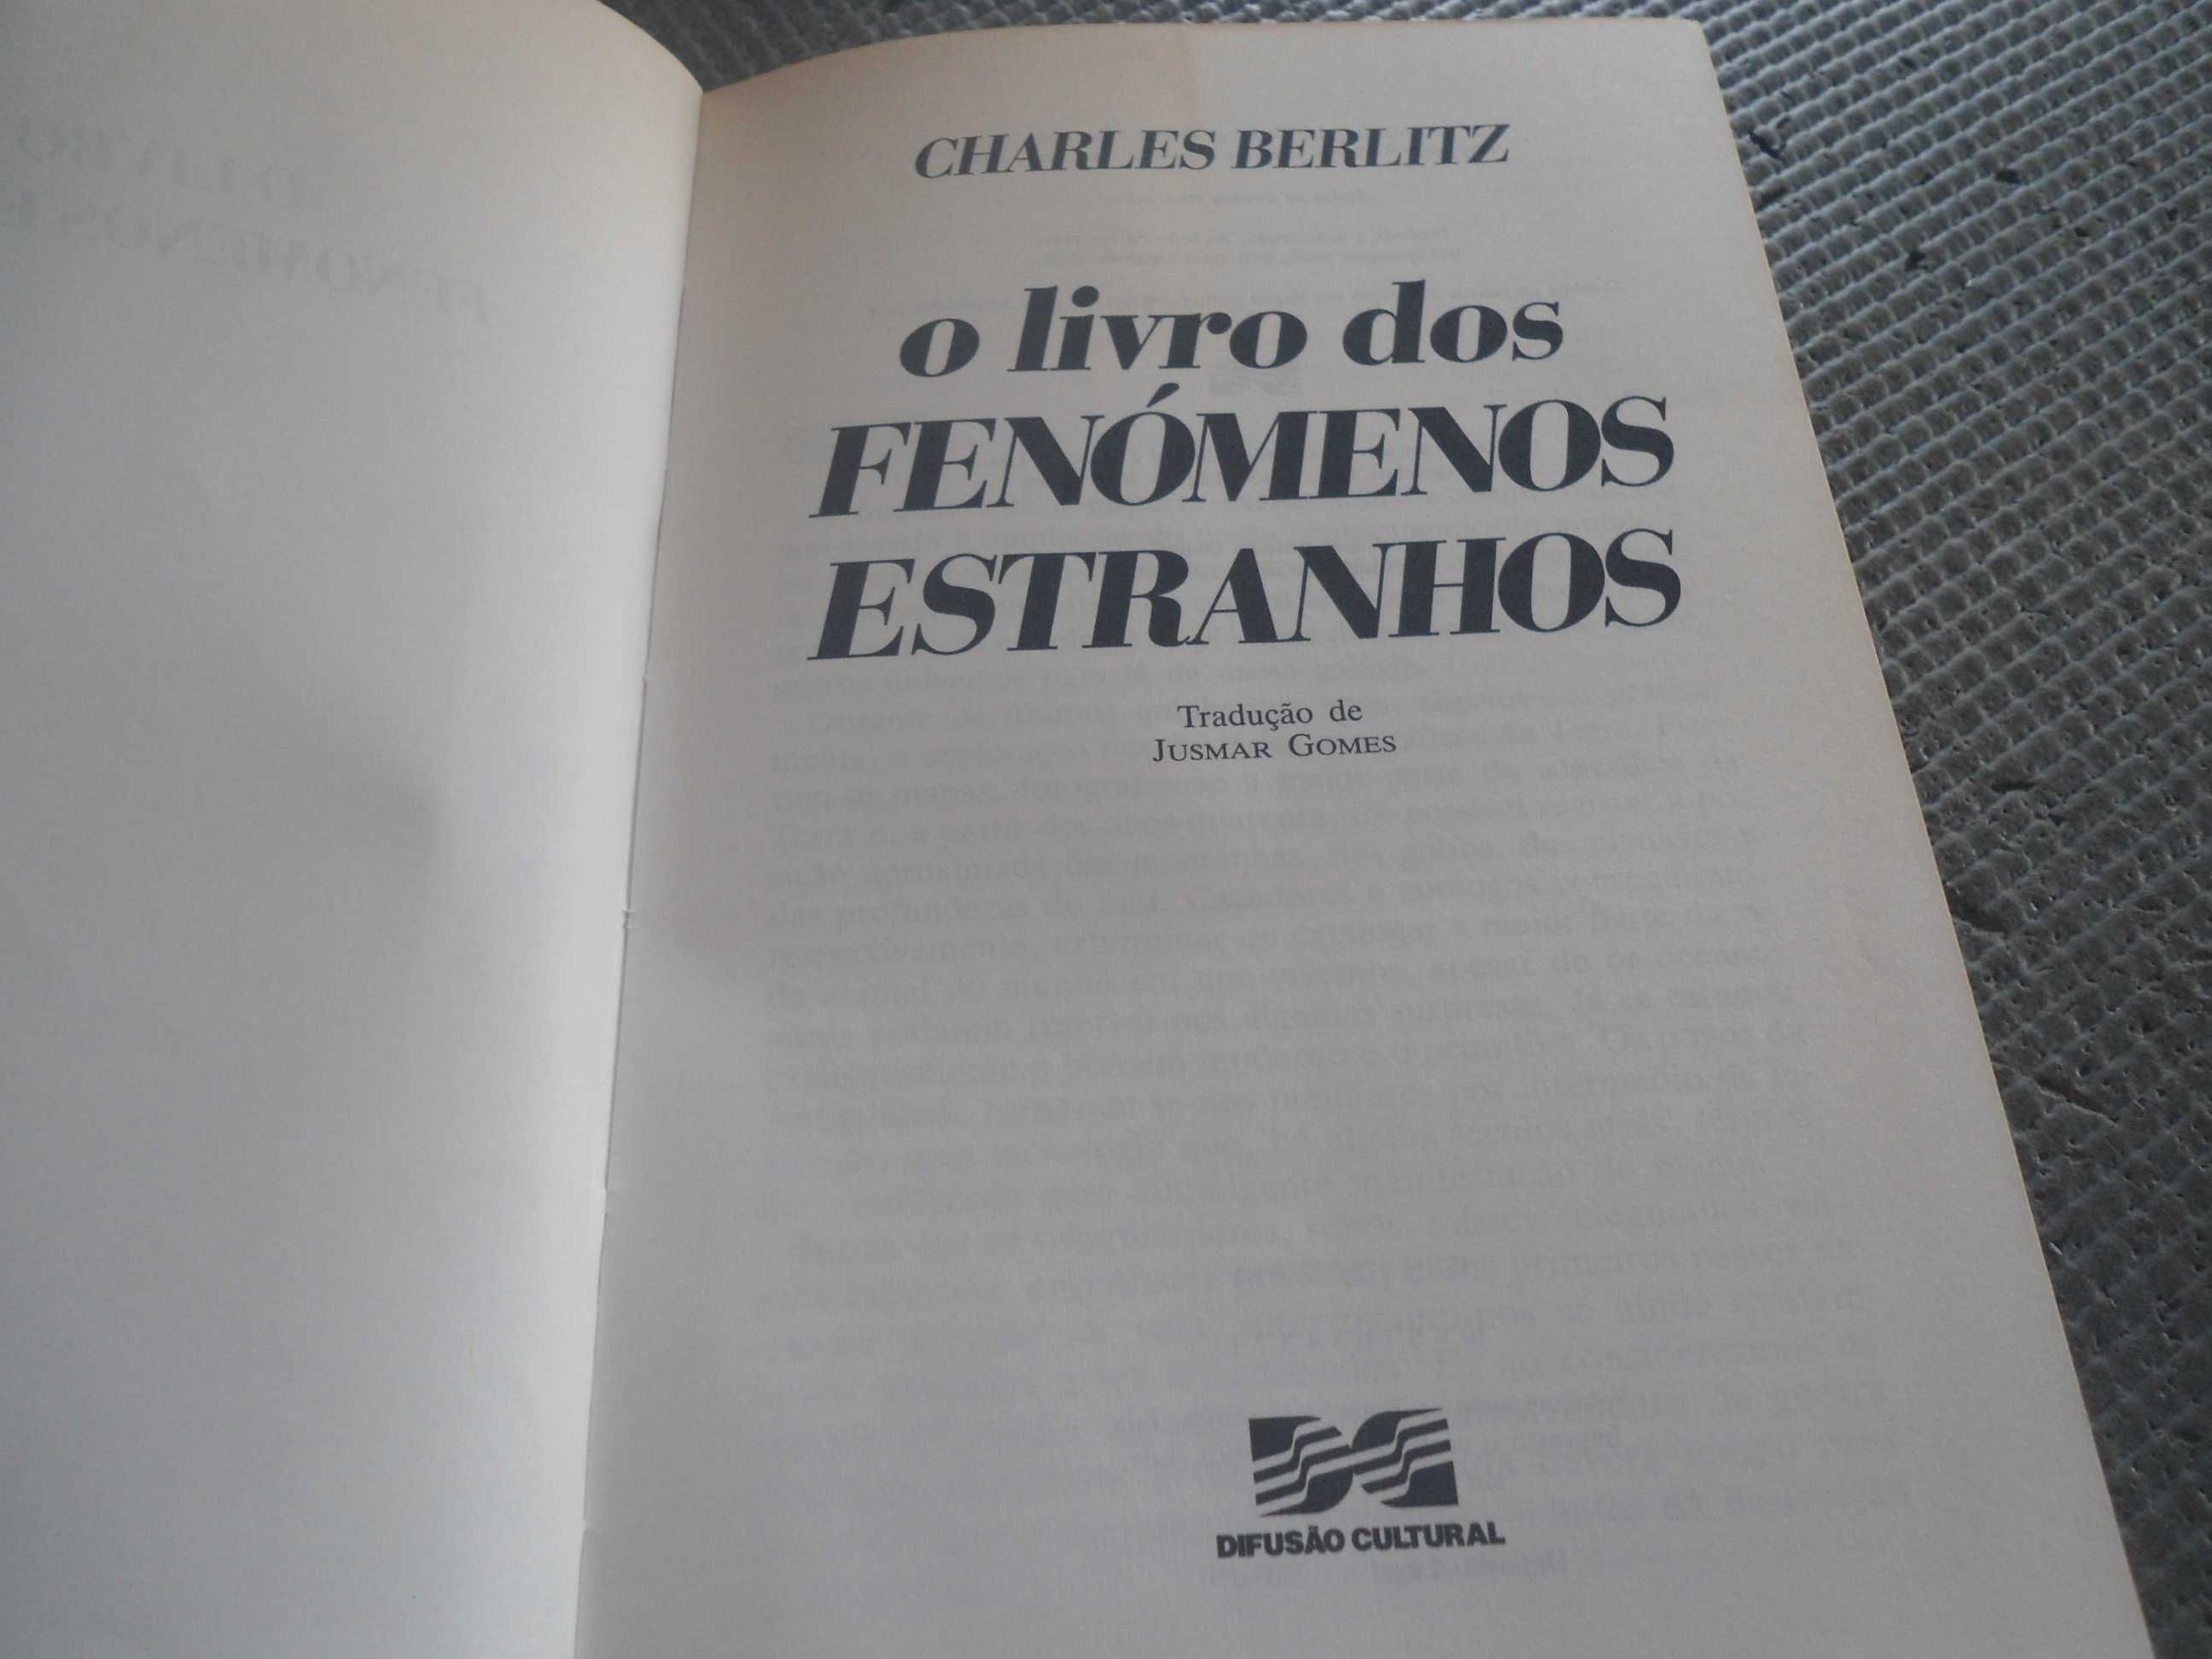 O livro dos Fenómenos estranhos de Charles Berlitz